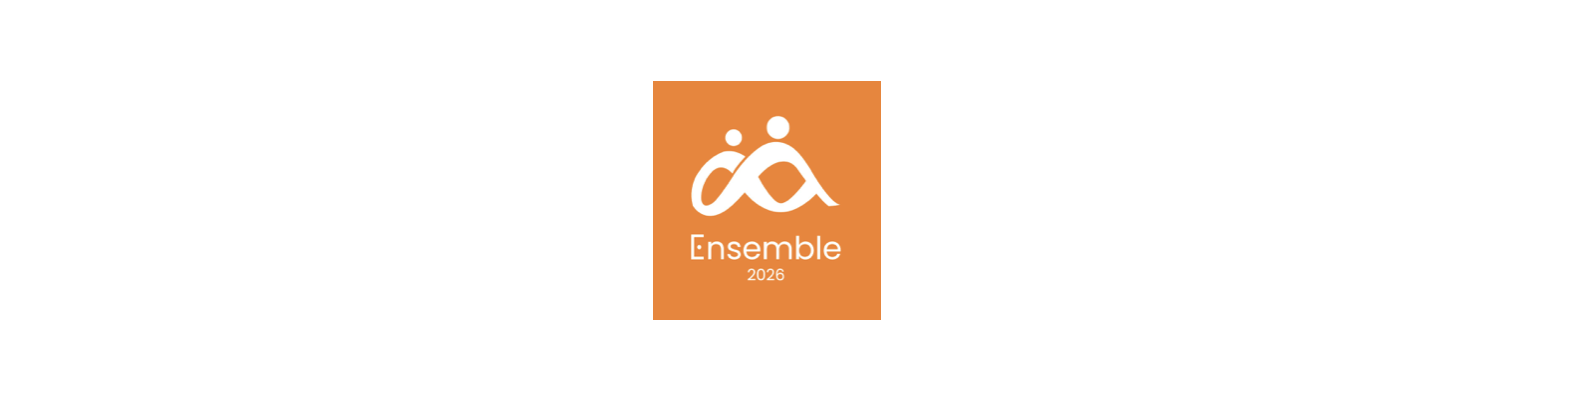 TGS France Ensemble 2026 logo